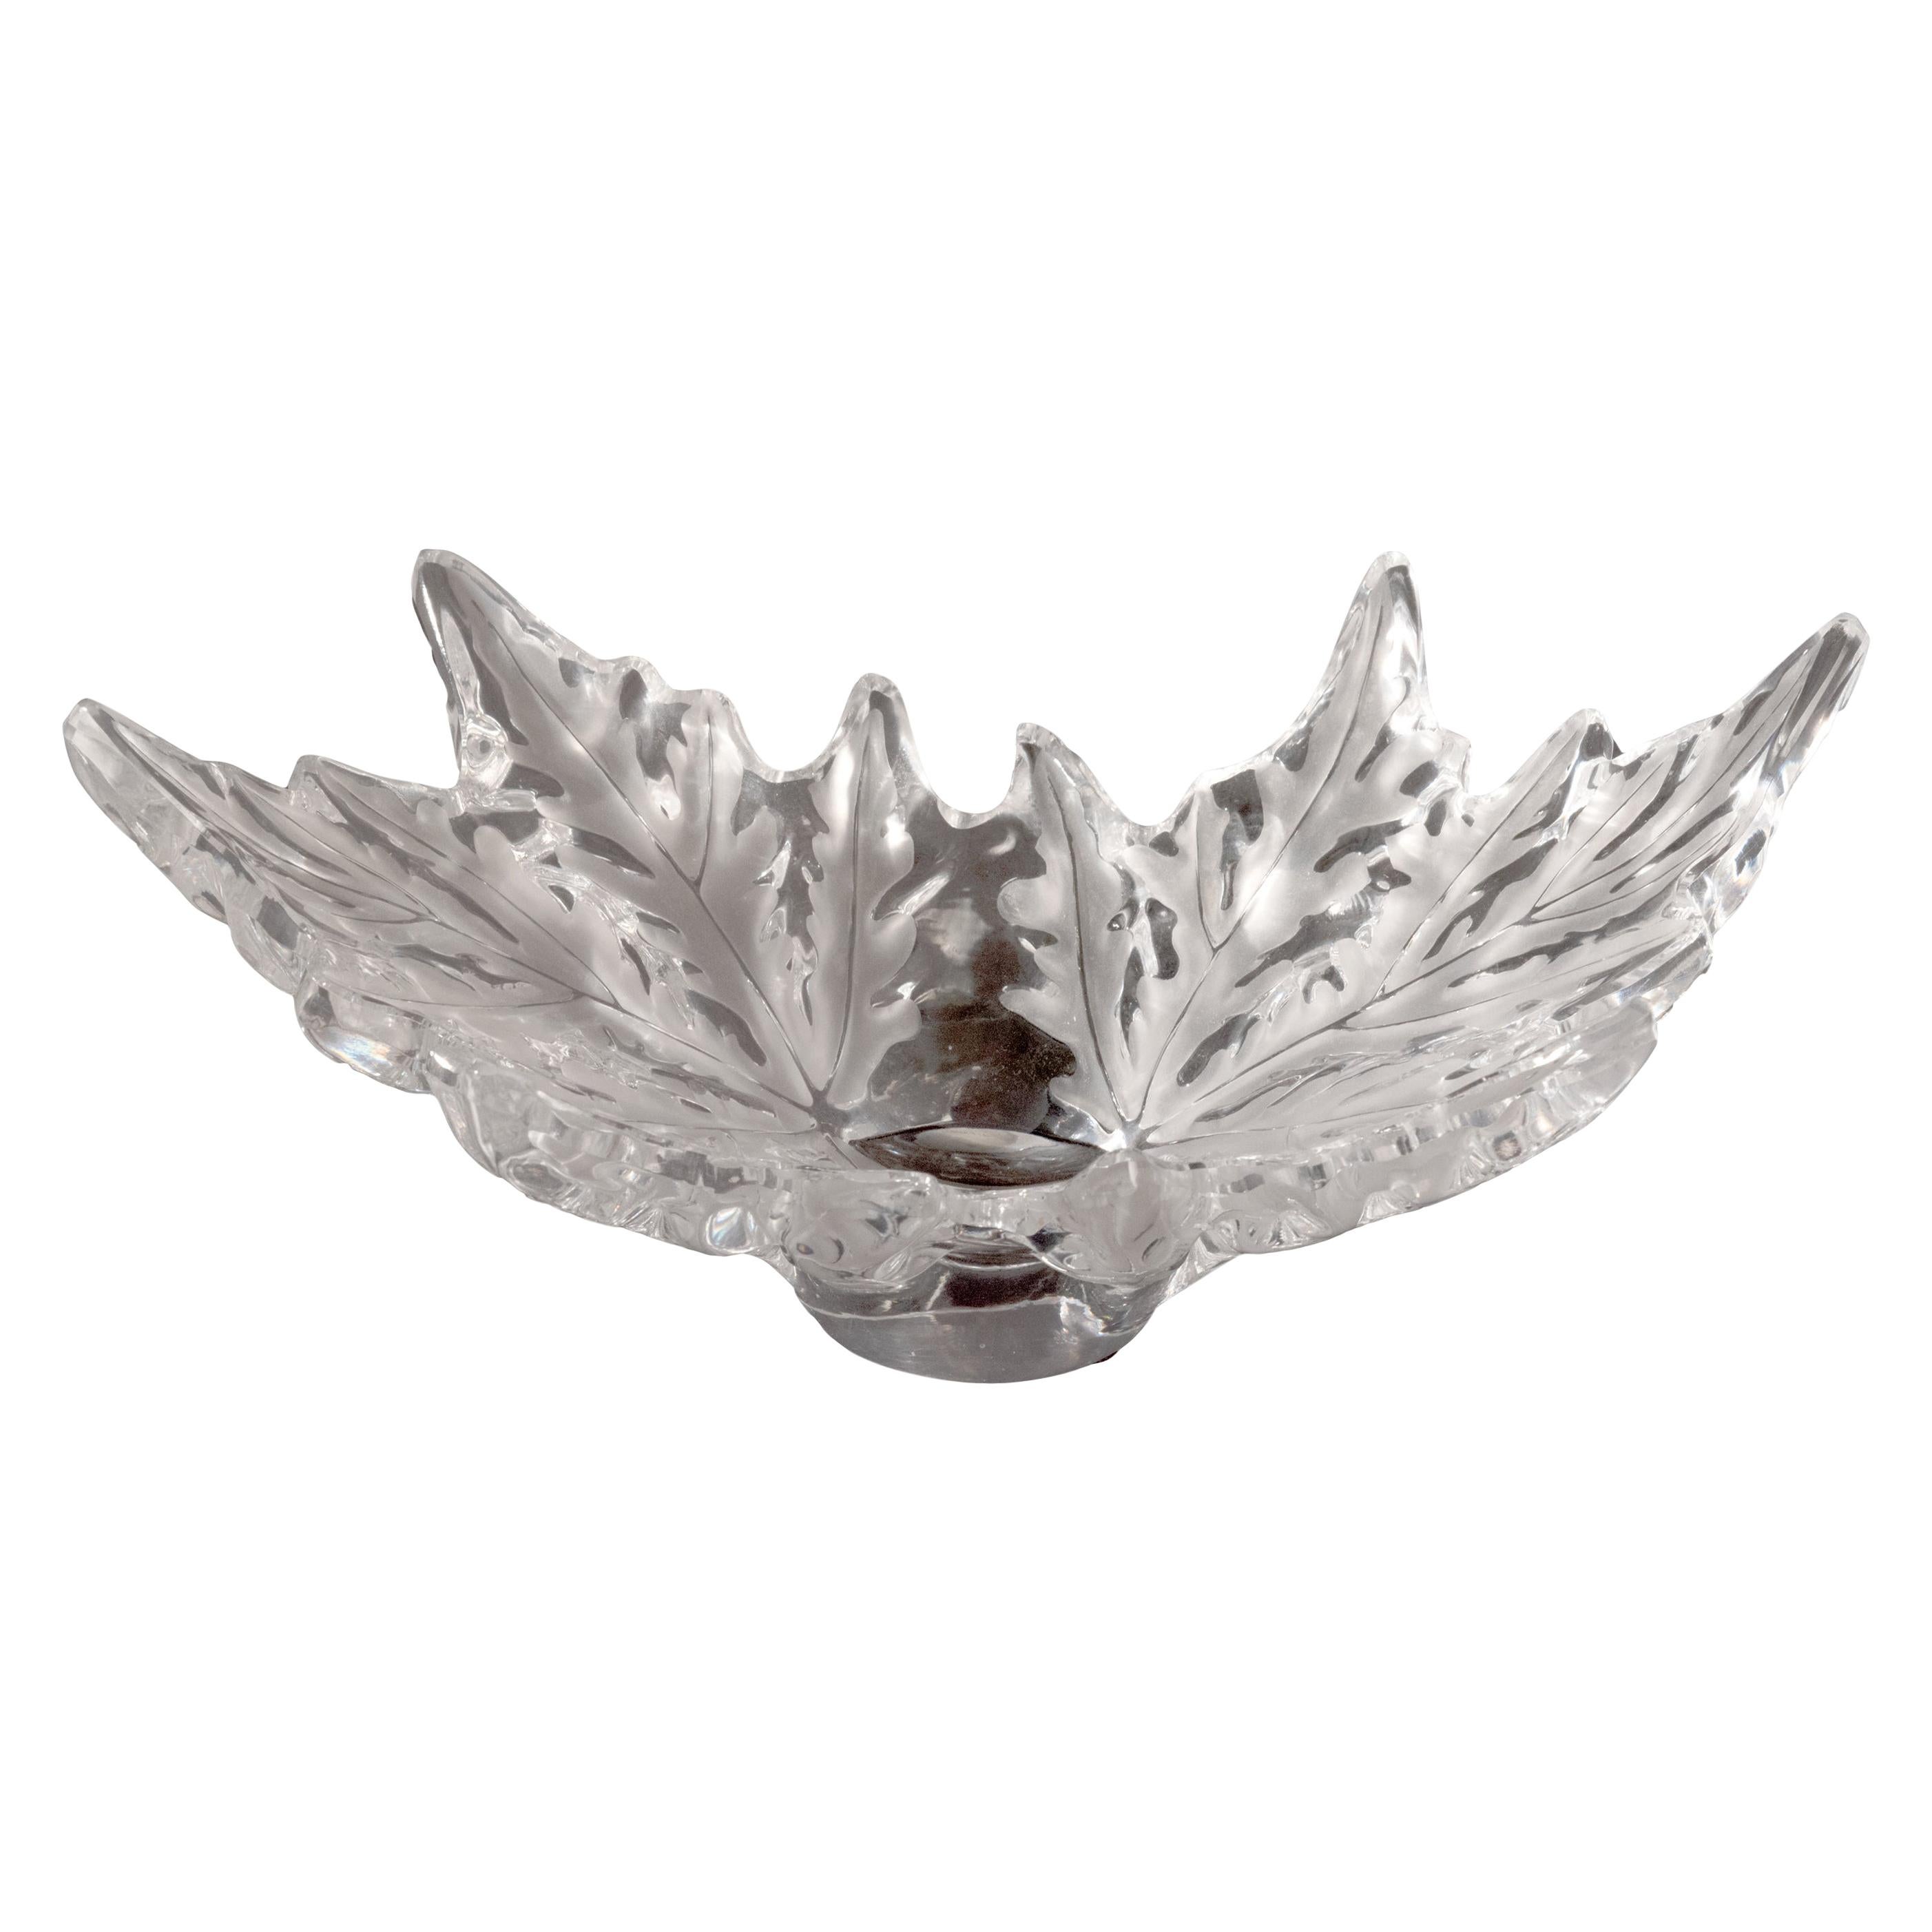 Lalique France "Champs-Elysées" Crystal Bowl For Sale